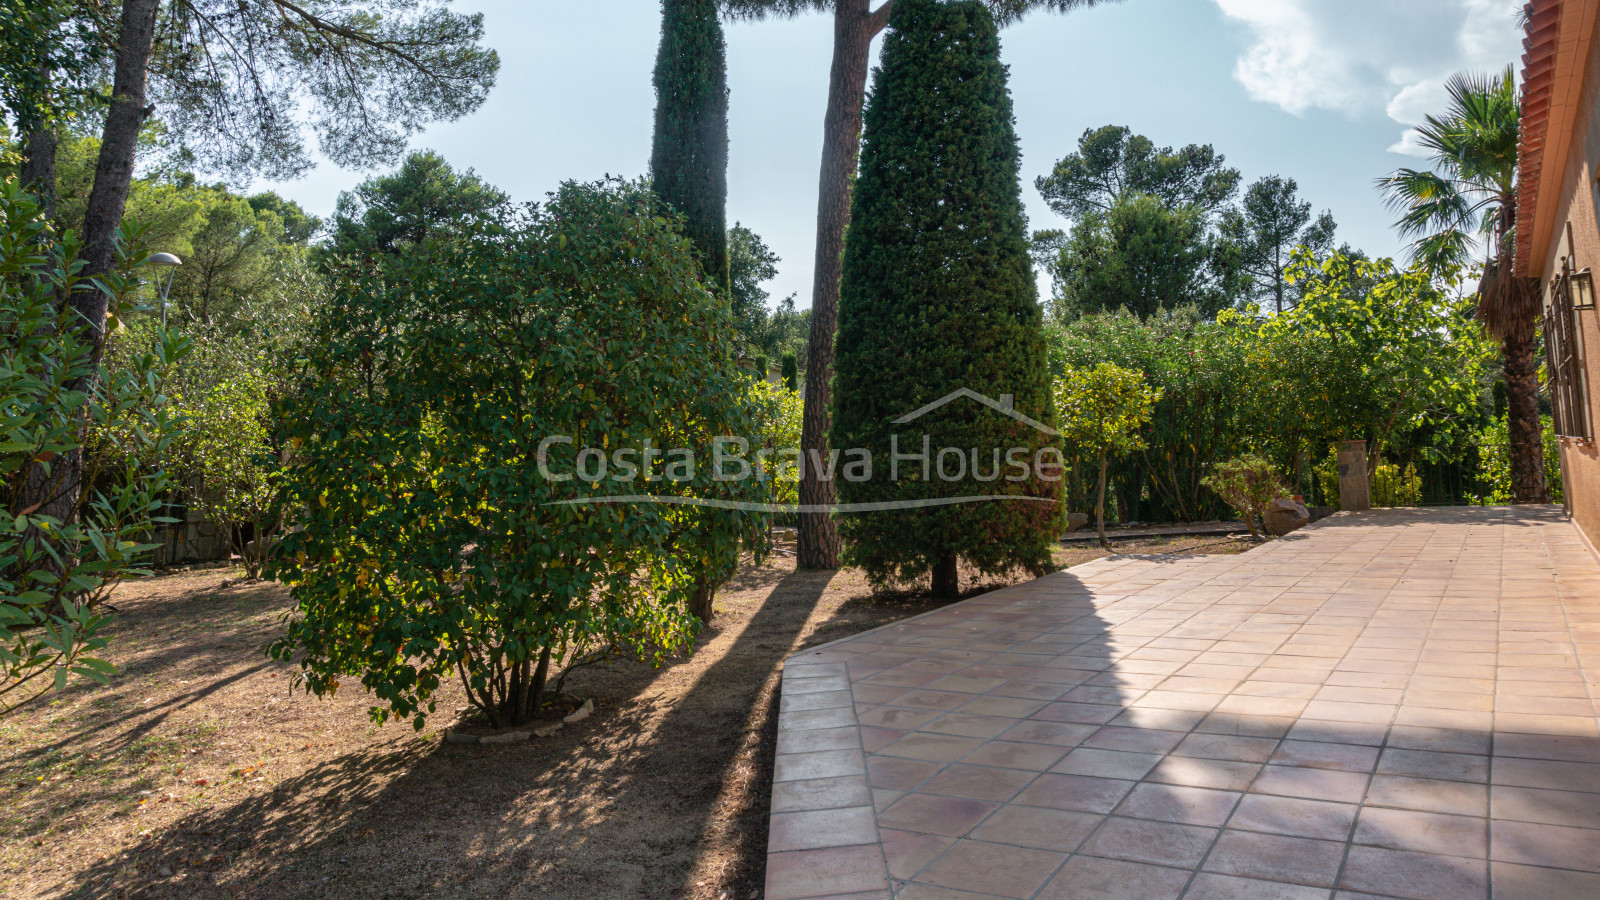 Maison avec piscine et jardin à vendre à Tamariu, à 1 km de la plage, sur un terrain de 1600 m².